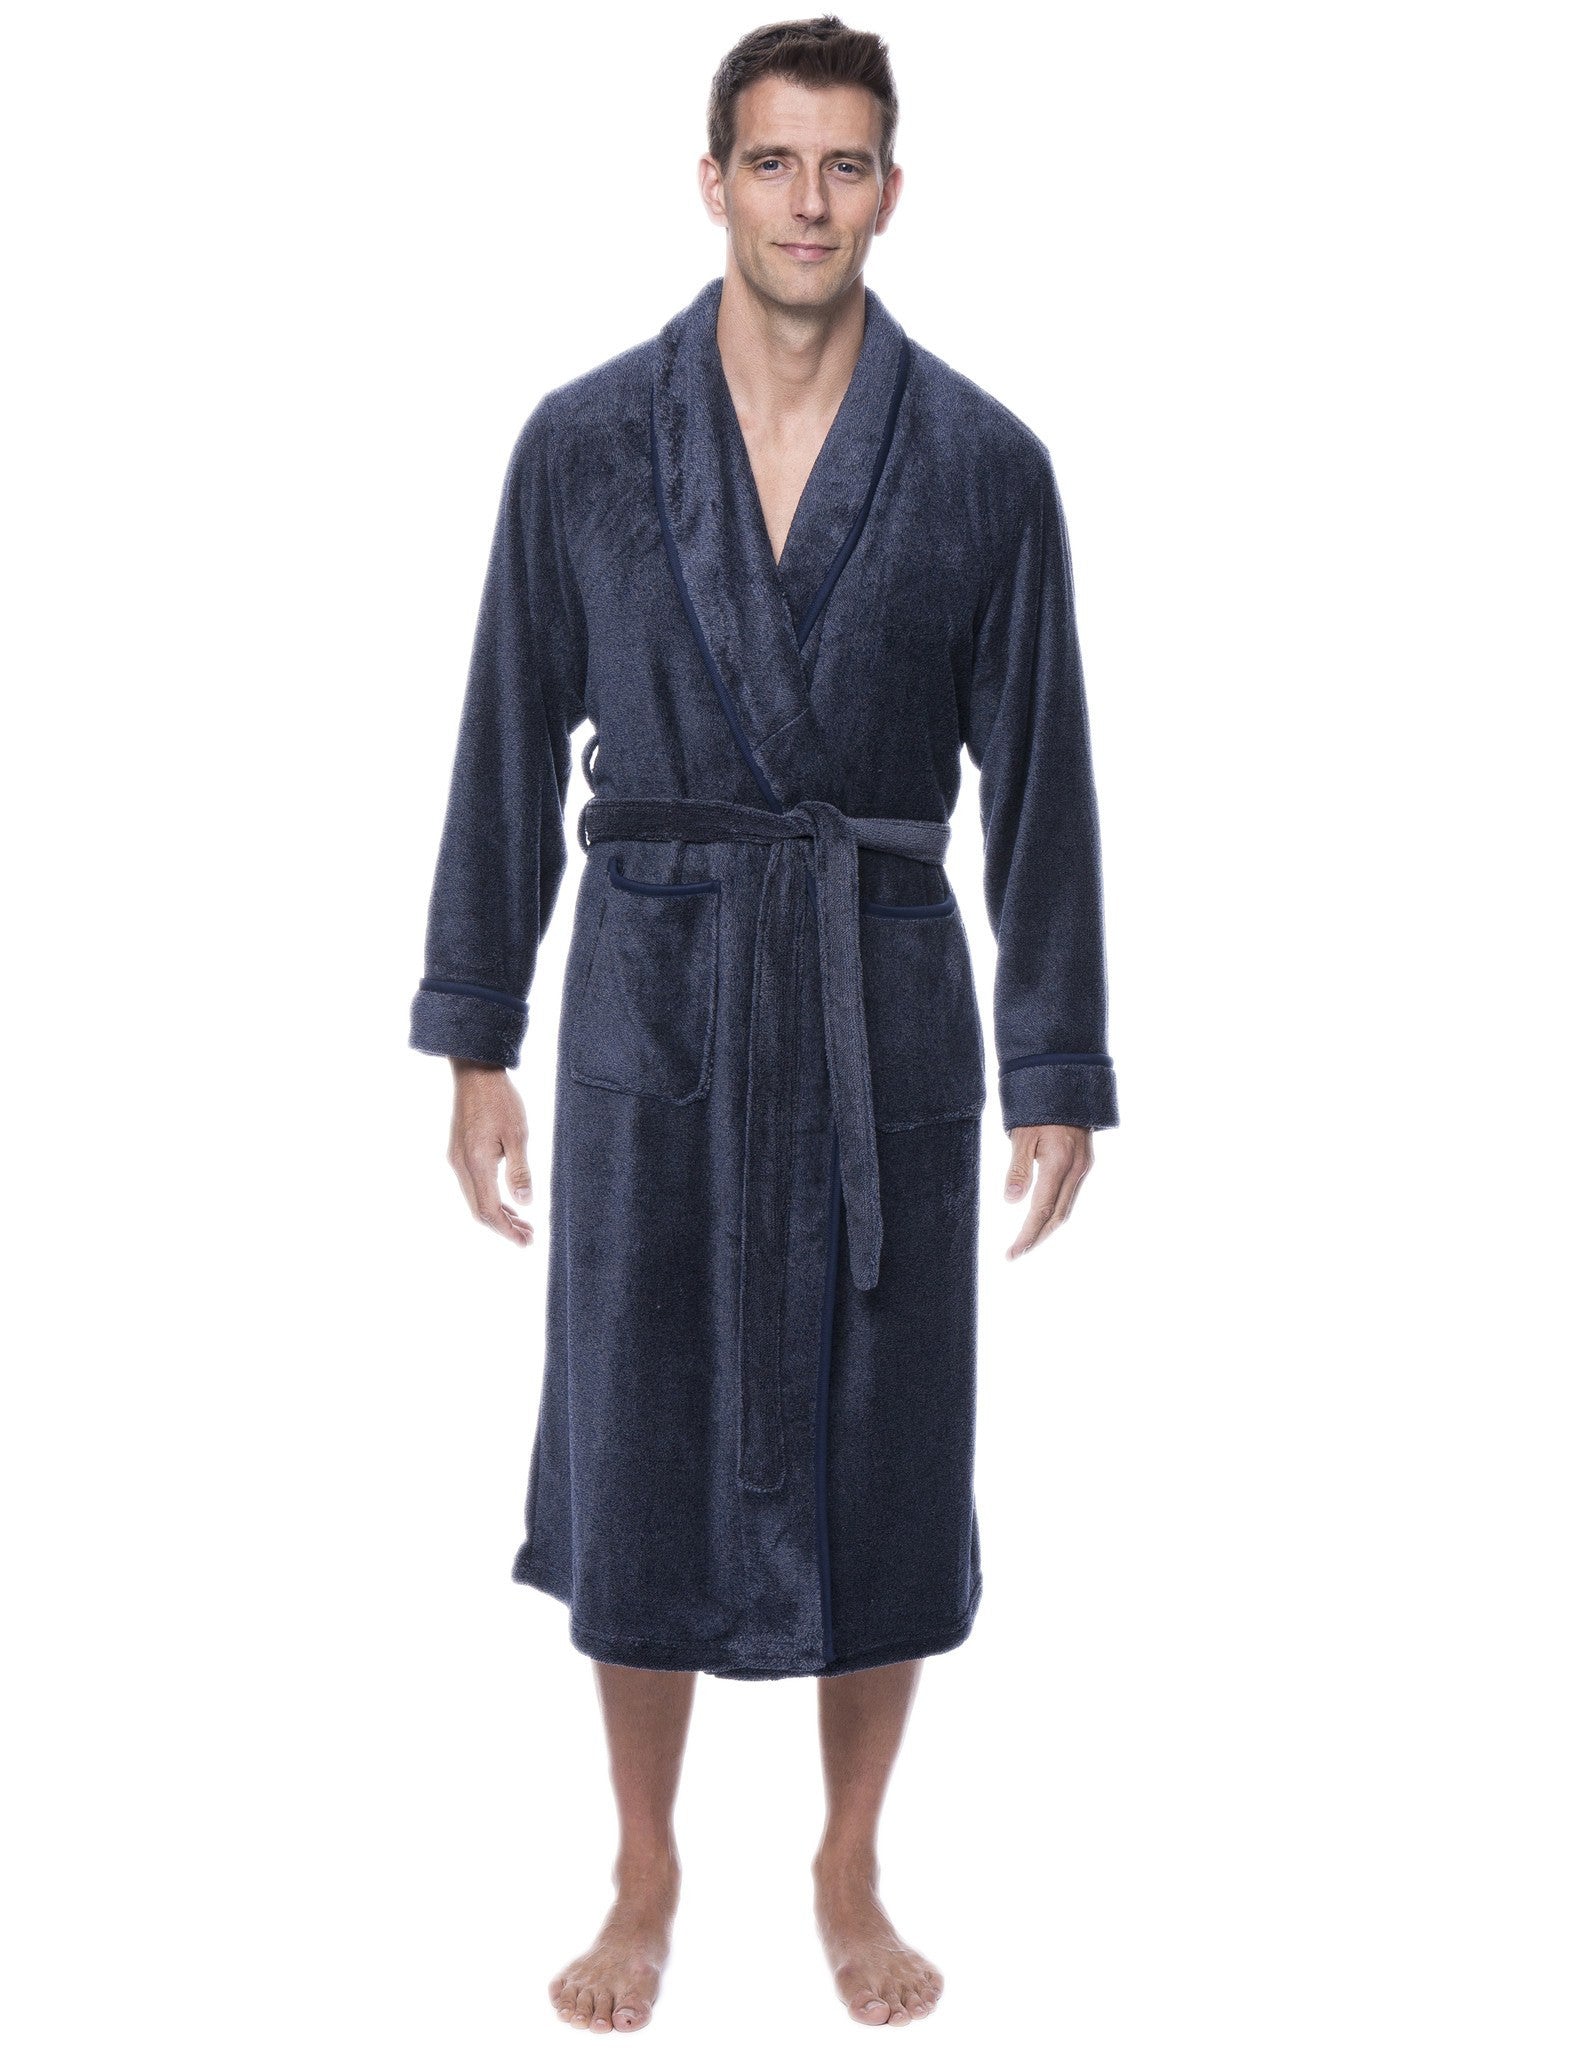 Noble Mount Men's Coral Microfleece Plush Spa/Bath Robe